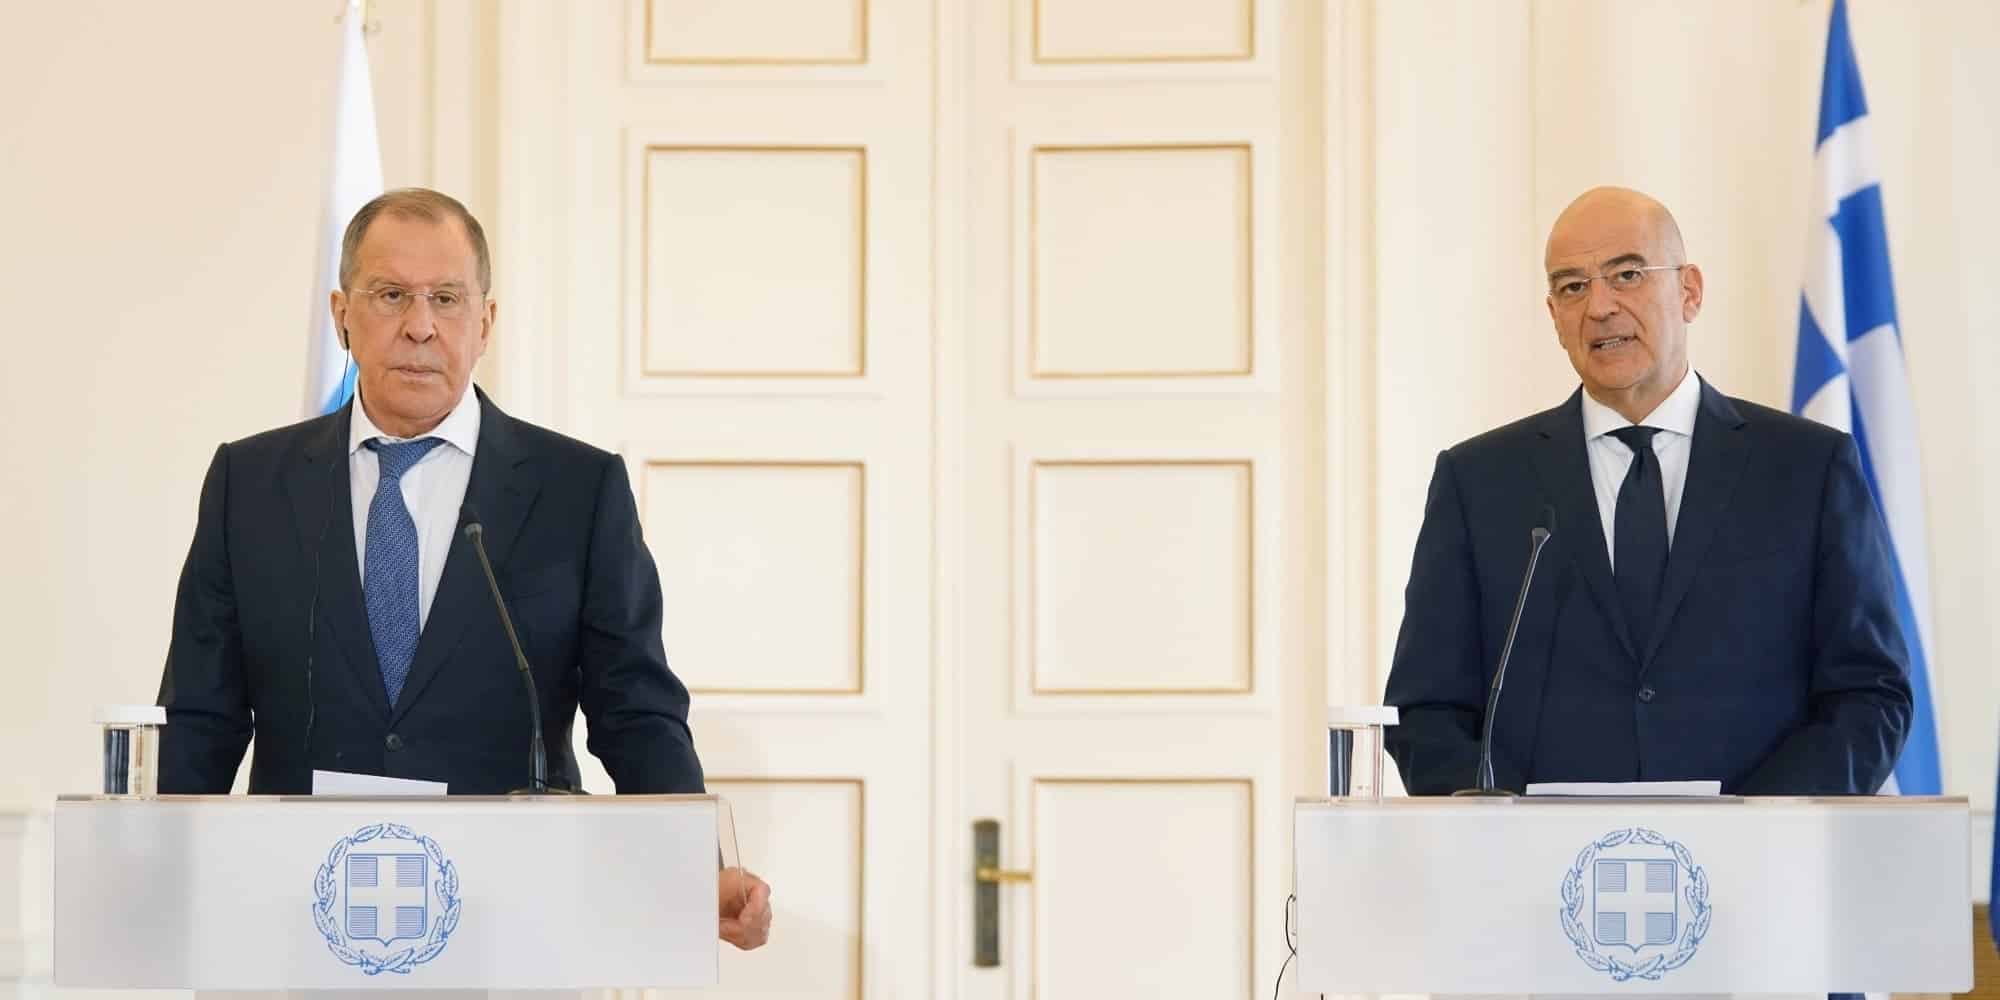 Ο Νίκος Δένδιας με τον Σεργκέι Λαβρόφ κάνουν κοινές δηλώσεις μετά τη συνάντησή τους, στο Υπουργείο, τη Δευτέρα 26 Οκτωβρίου 2020